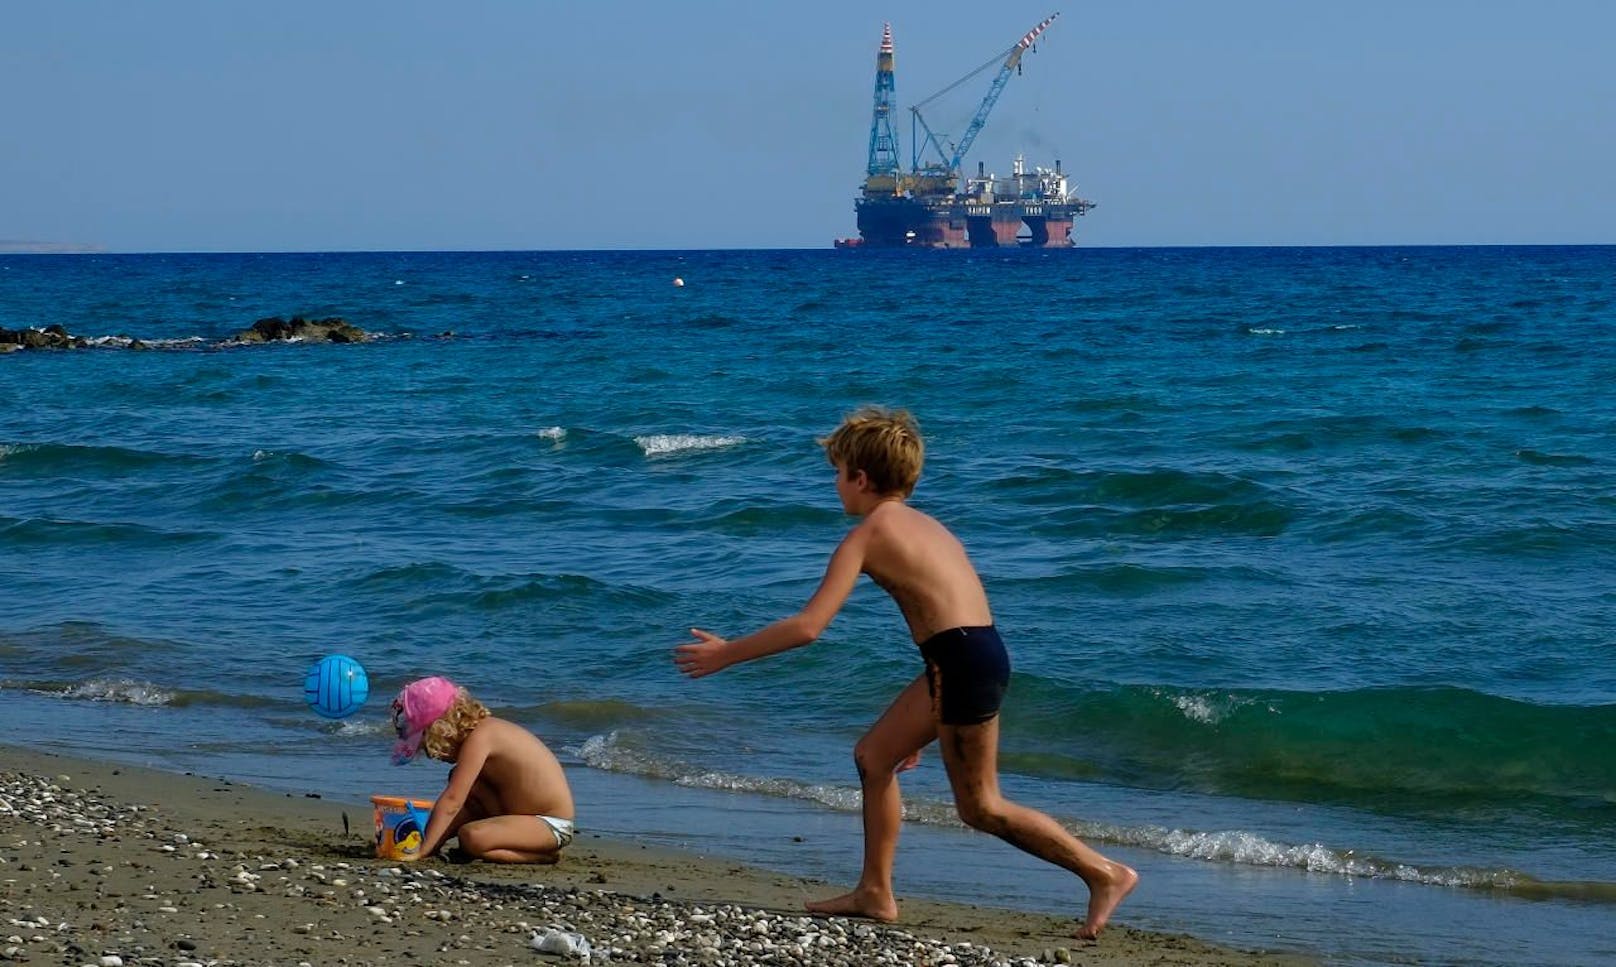 Türkische Kriegsschiffe blockieren Erdgas-Suche